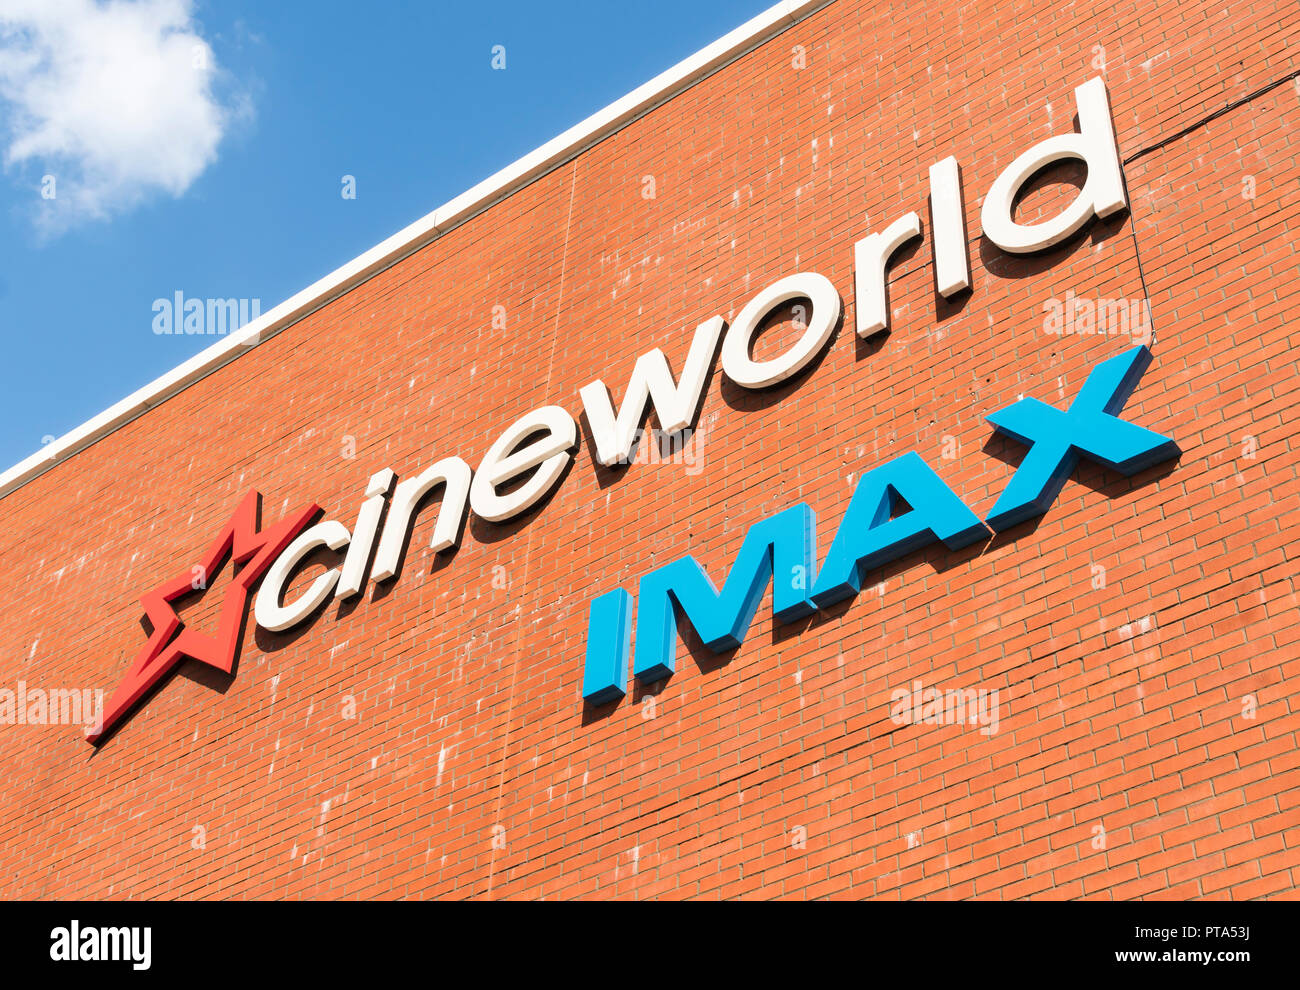 Cineworld cinema Imax segno sul lato di un alto edificio in mattoni parete in Inghilterra, Regno Unito. Foto Stock